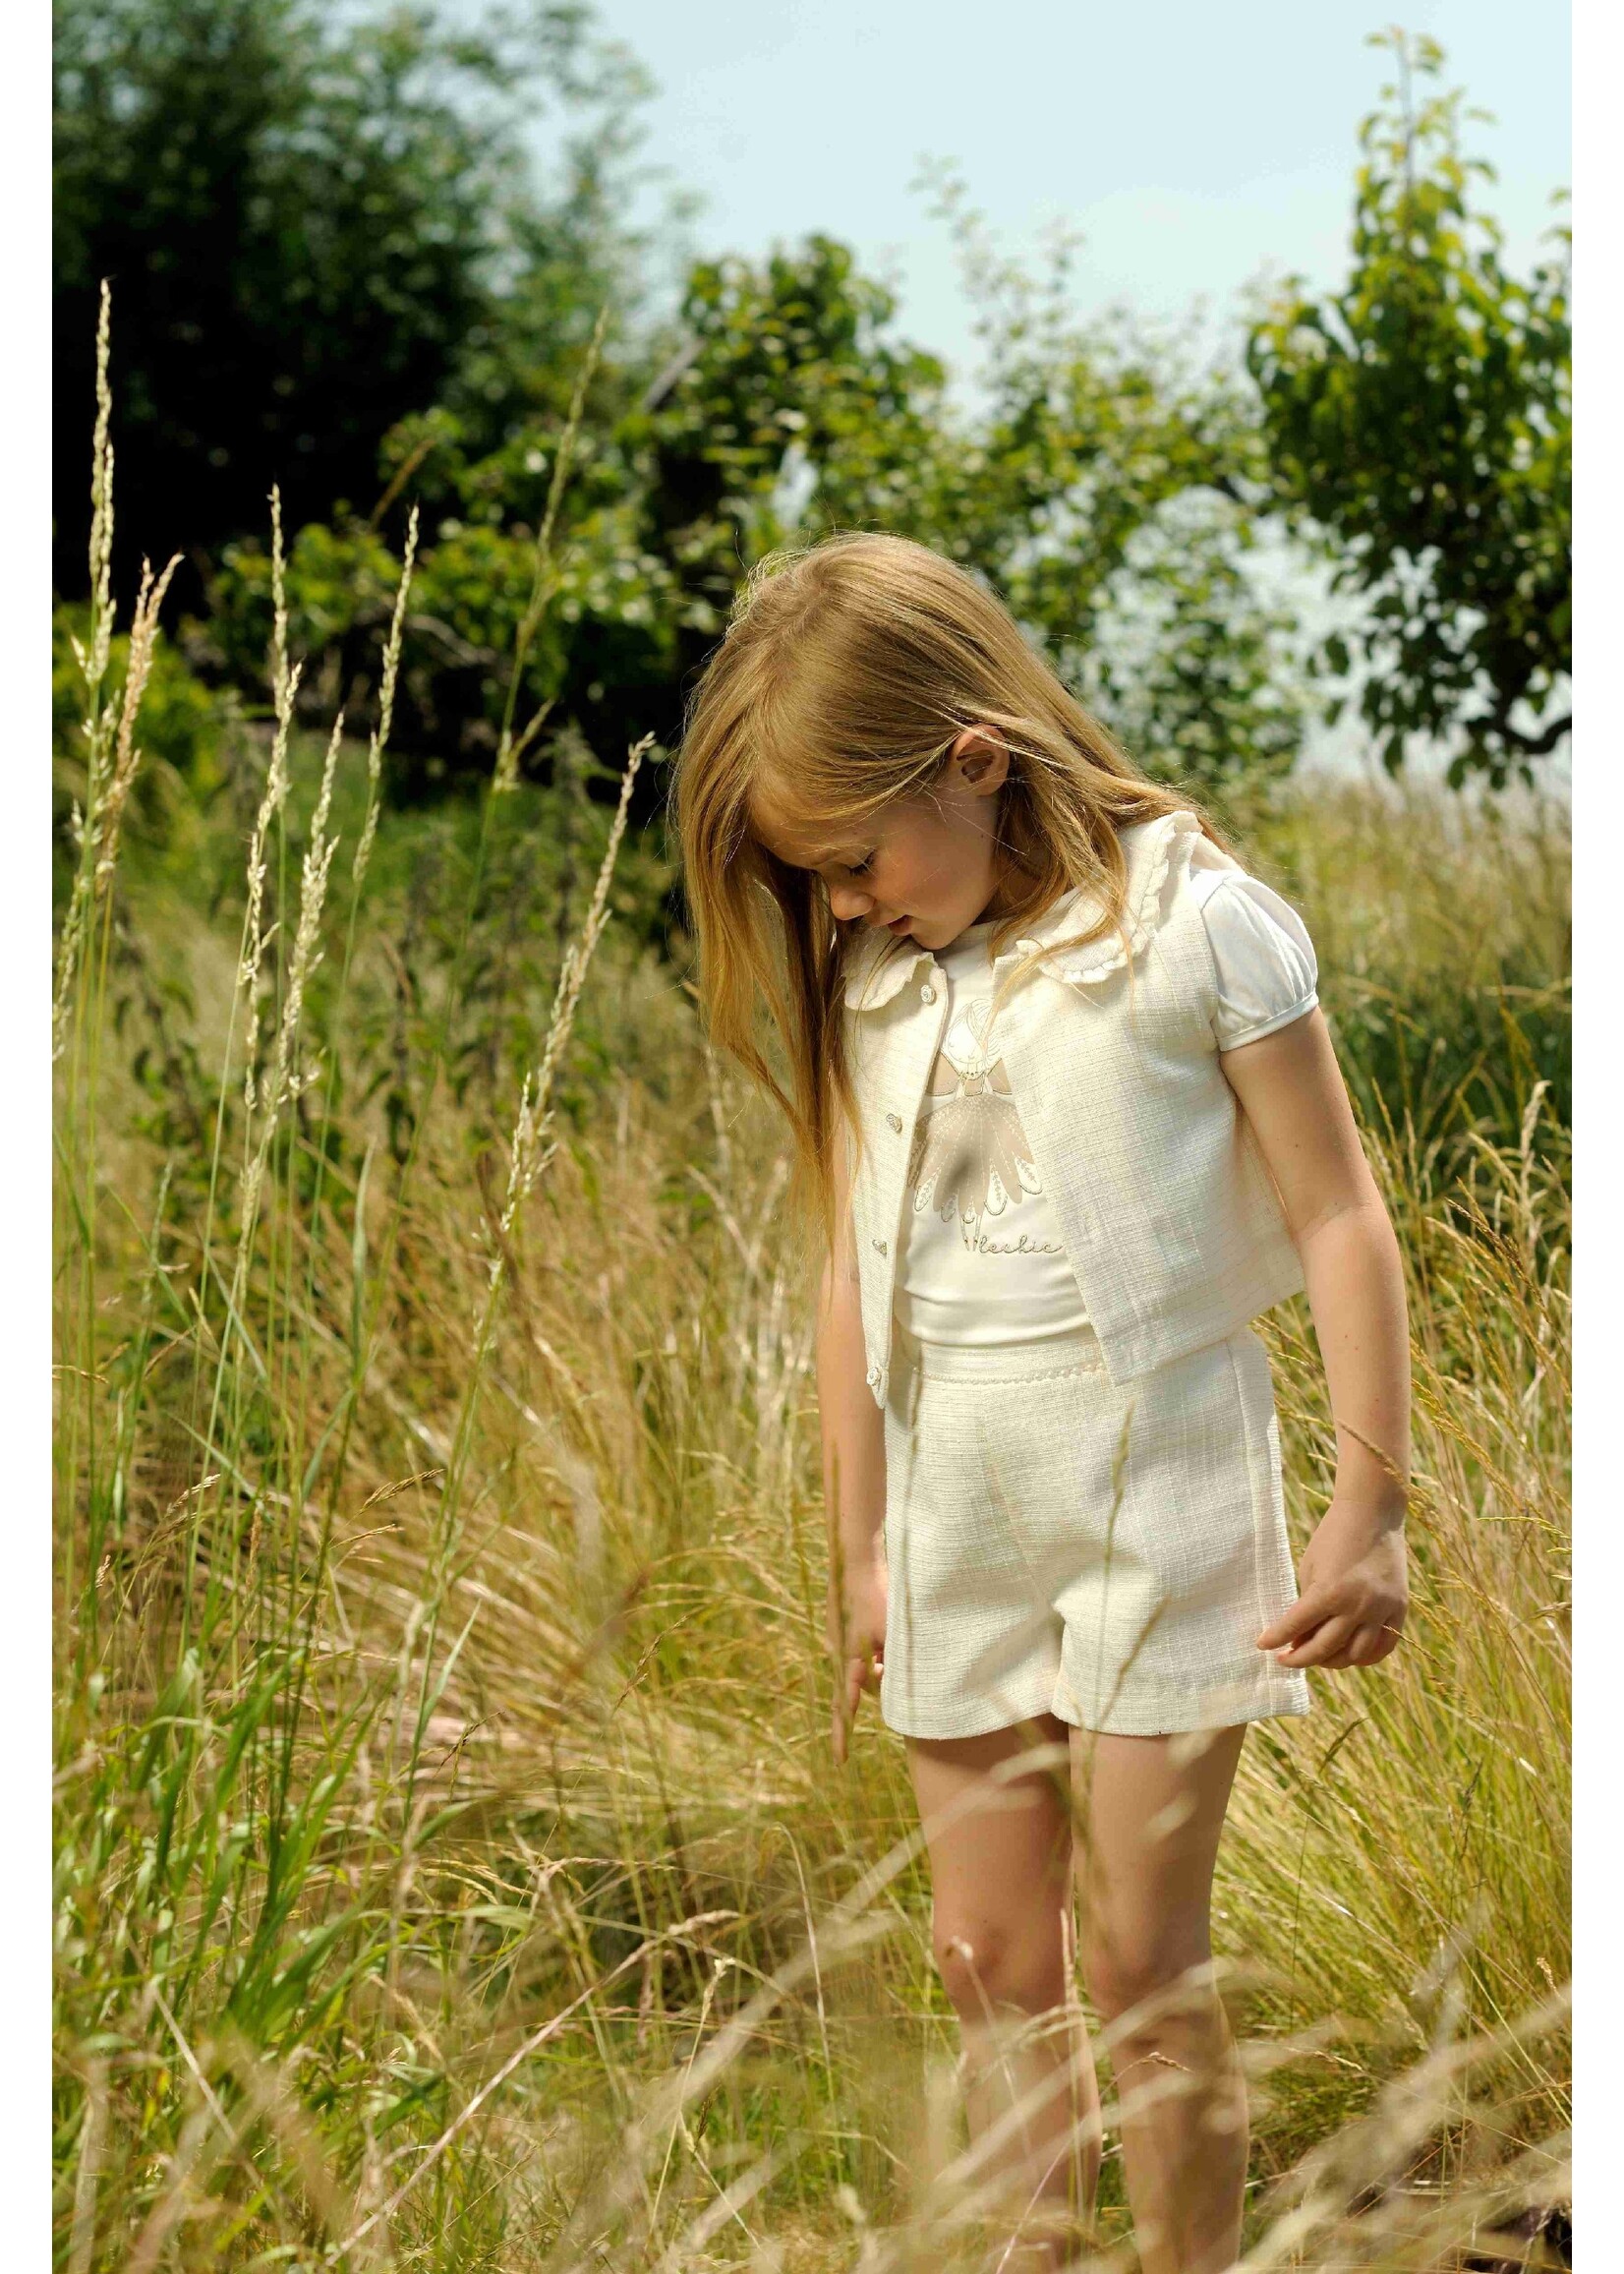 Le Chic Girls Kids C402-5475 NOMS flower angel T-shirt Off White